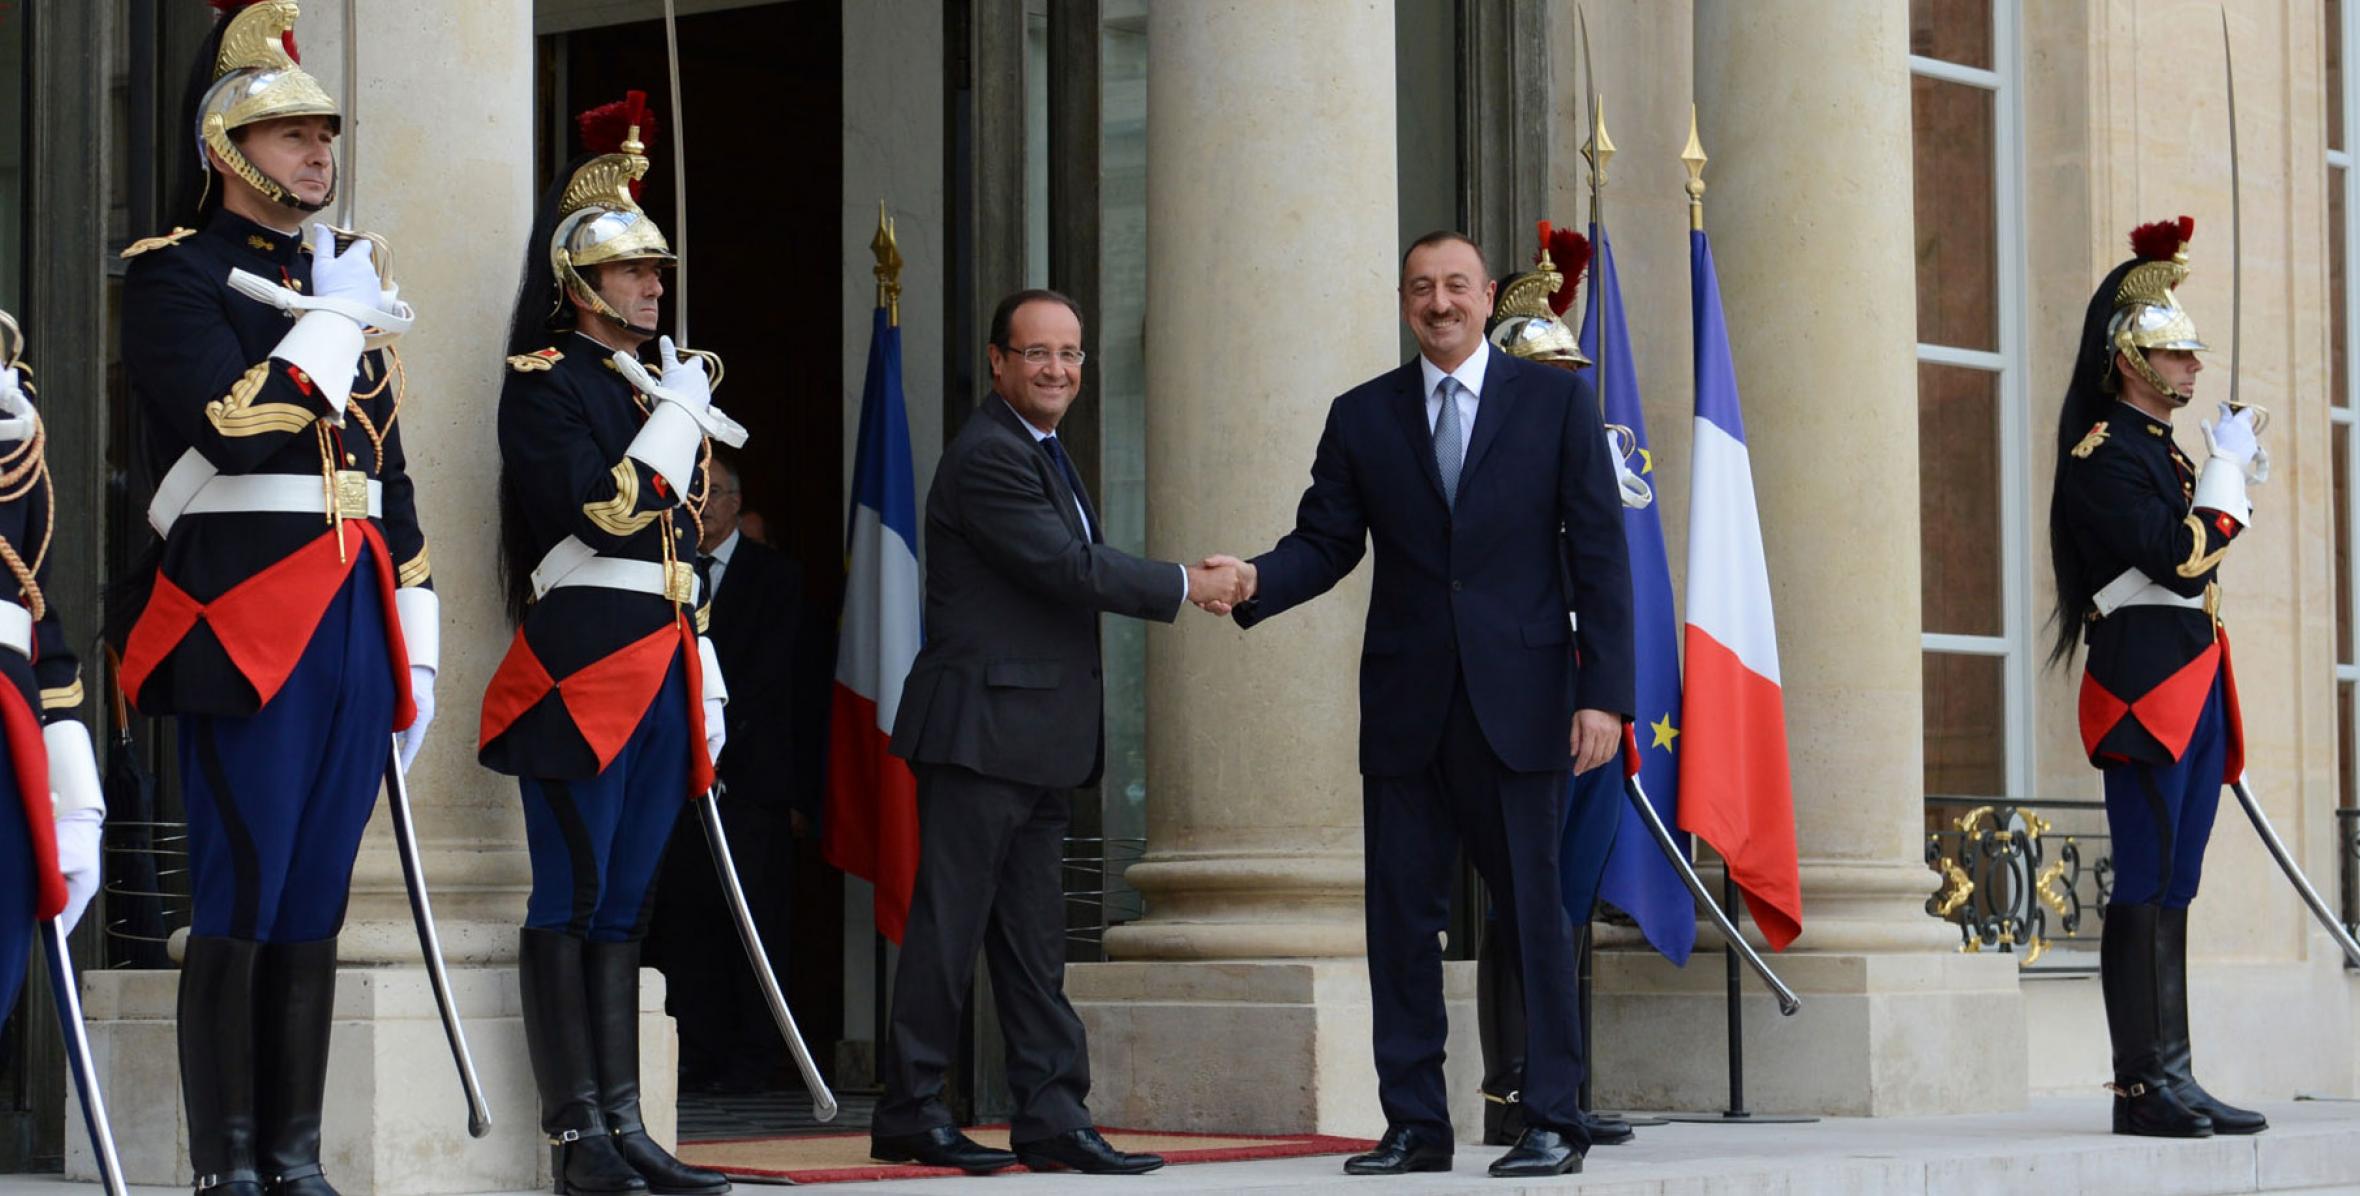 Cостоялась встреча Ильхама Алиева и Президента Французской Республики Франсуа Олланда